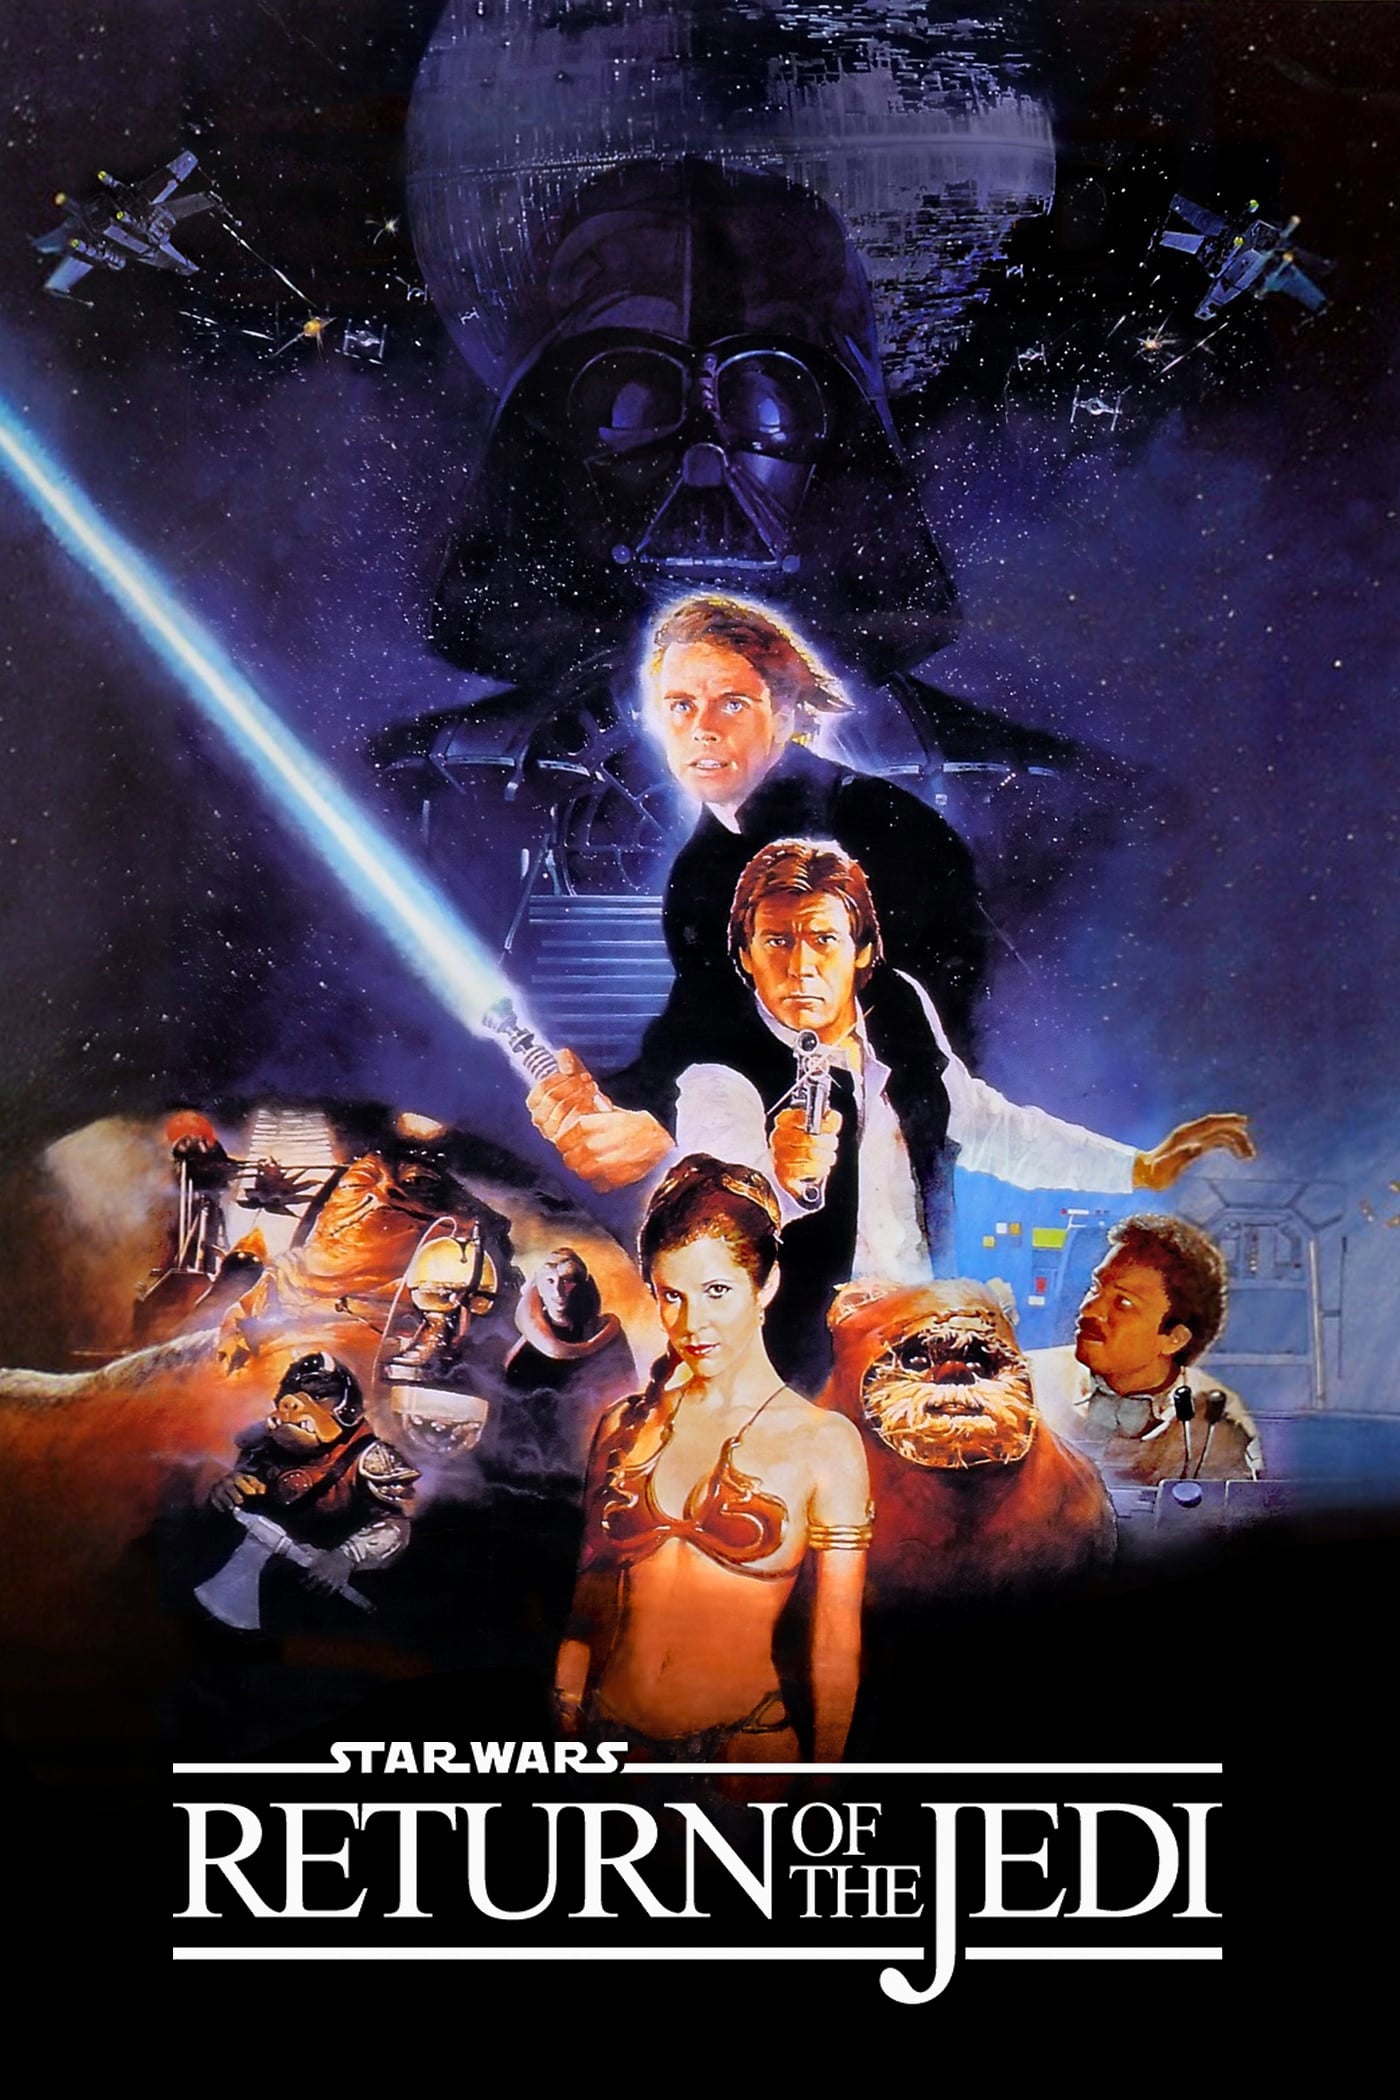 Star Wars Episode VI: Return Of The Jedi Picture